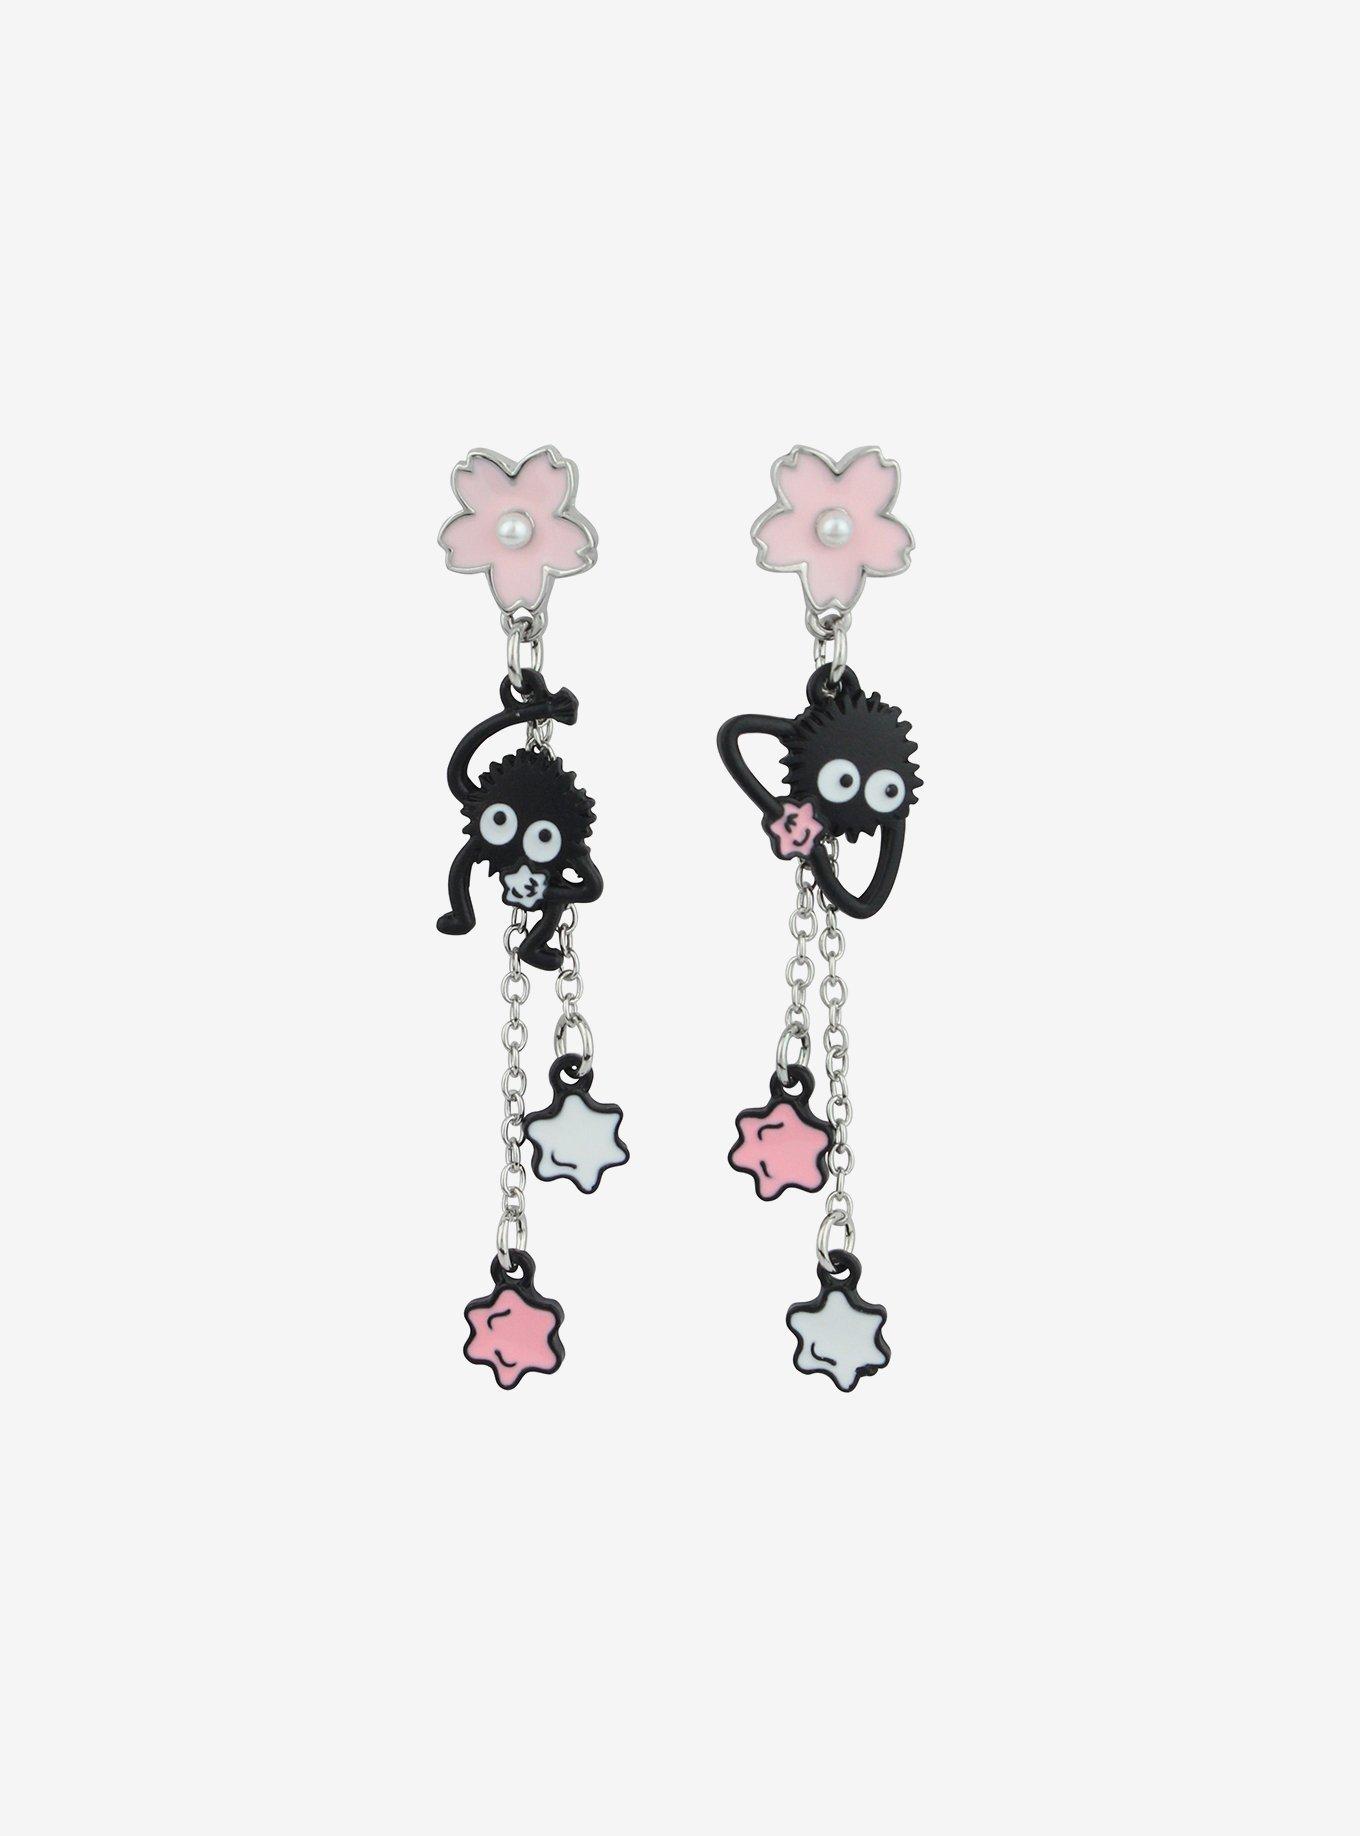 Studio Ghibli Spirited Away Soot Sprites Sakura Star Candy Earrings